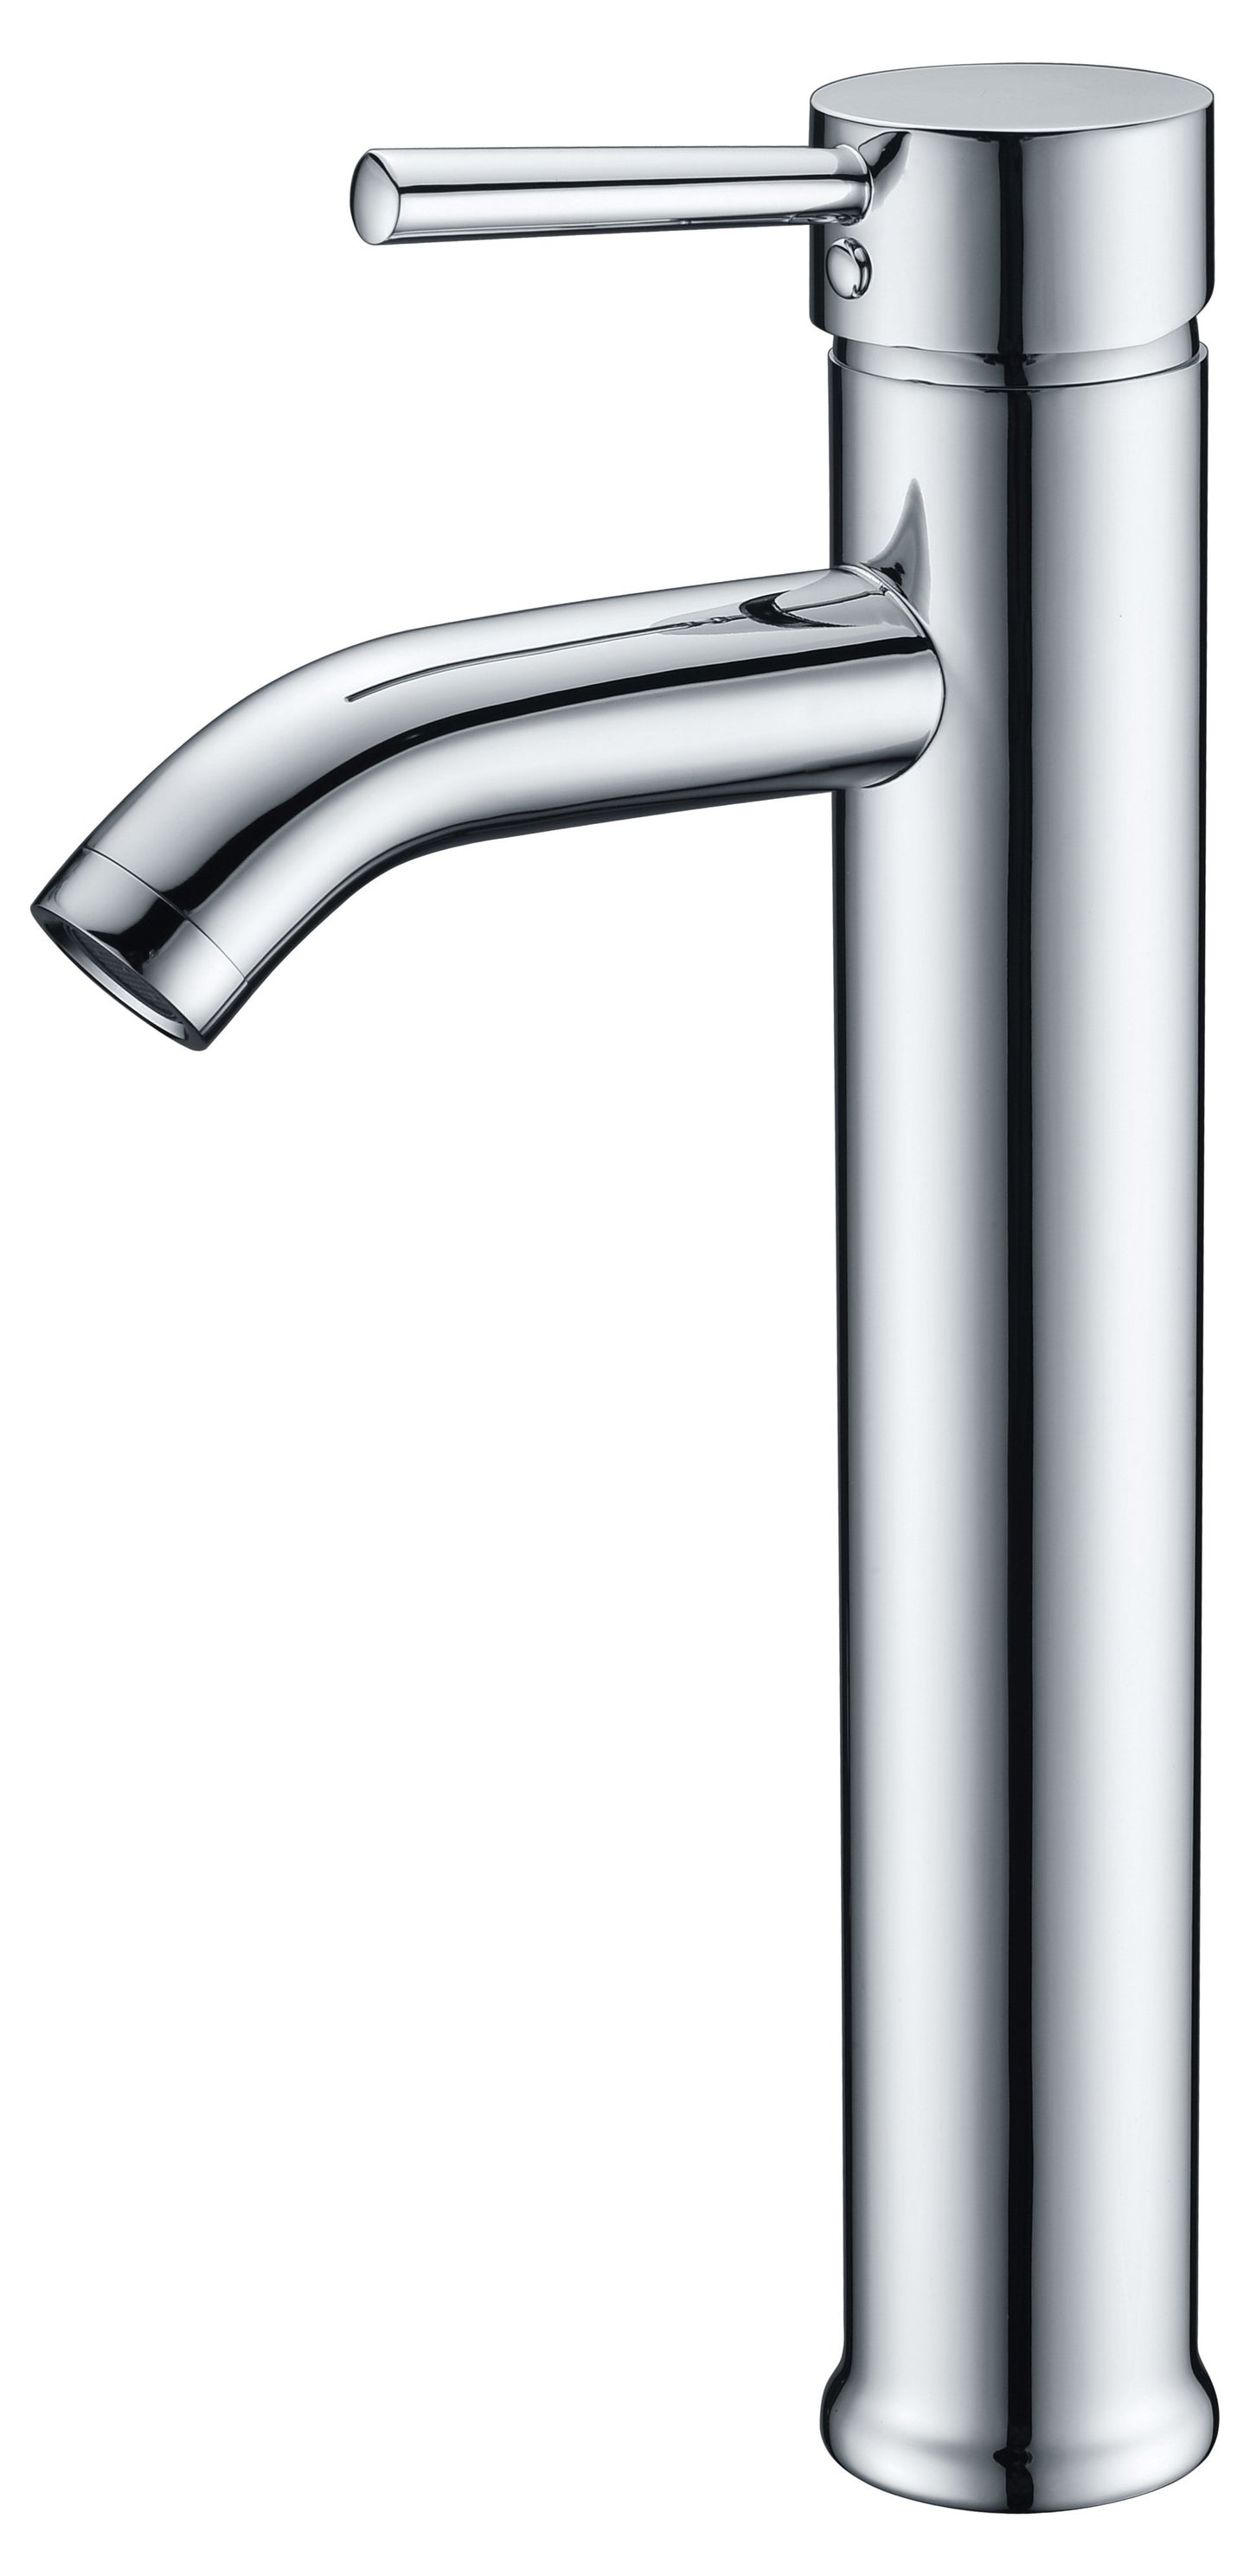 Mezzo Series Deco-Glass Vessel Sink in Slumber Wisp with Fann Faucet in Chrome - Luxe Bathroom Vanities